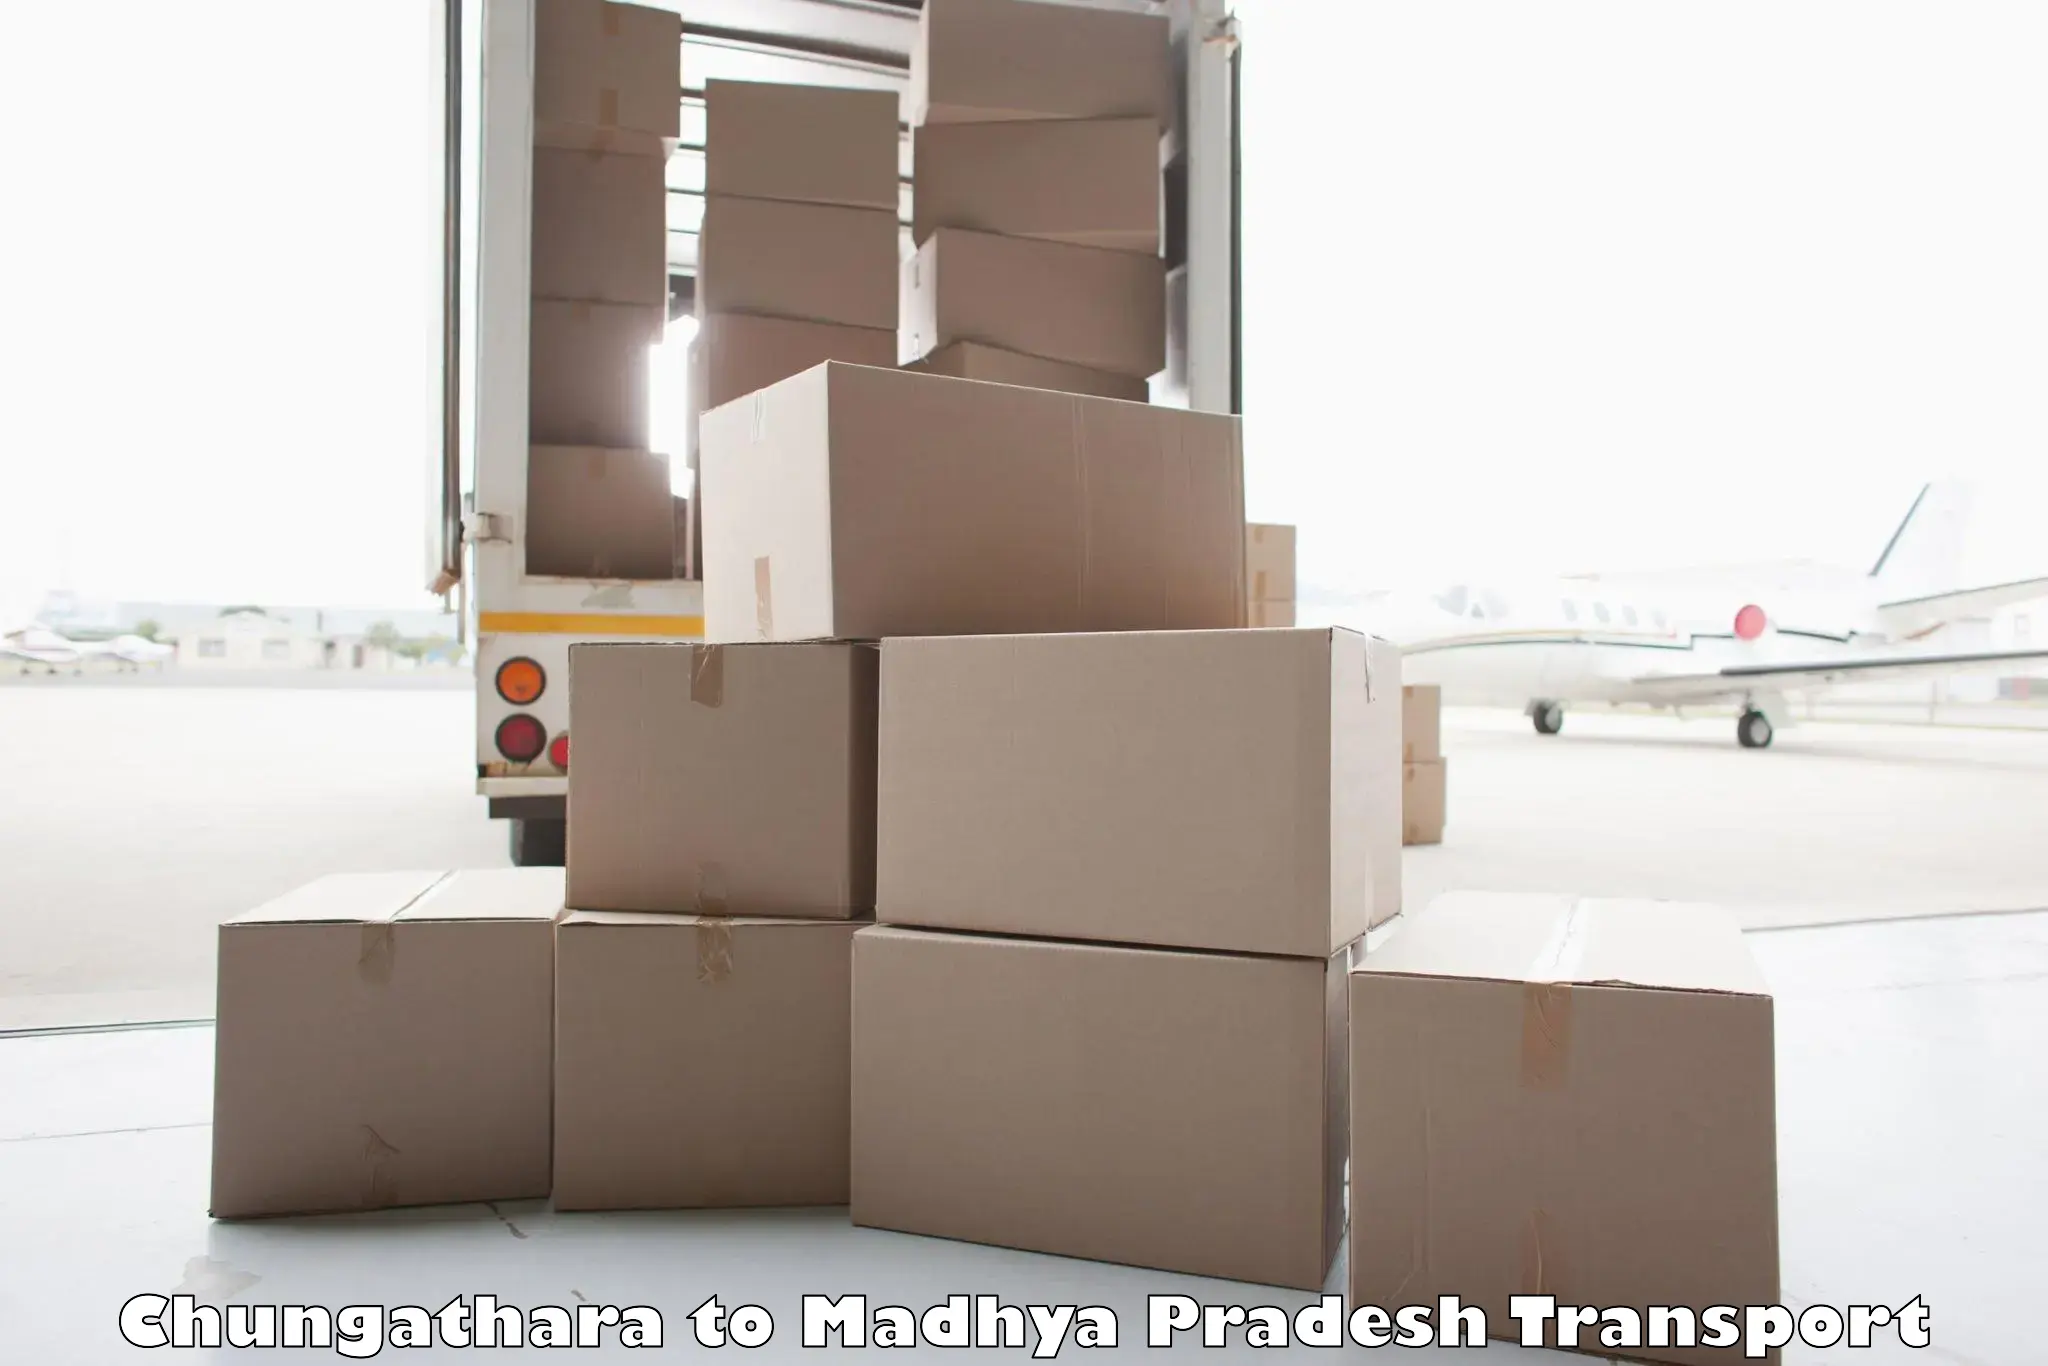 Luggage transport services Chungathara to Ganj Basoda